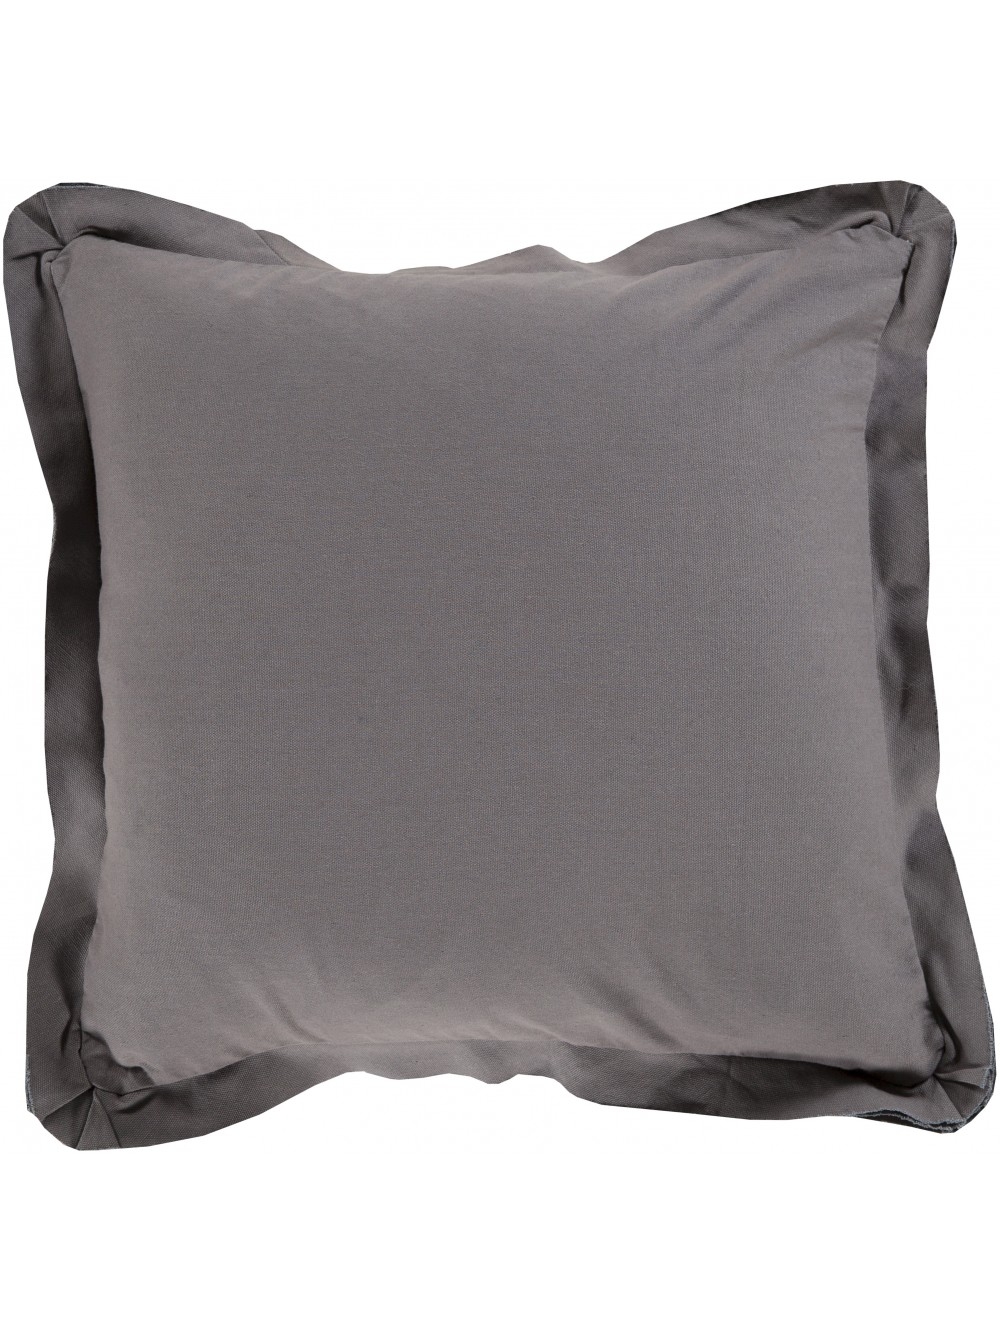 Sasha Ruffle Pillow - 18x18 - With insert - Image 0